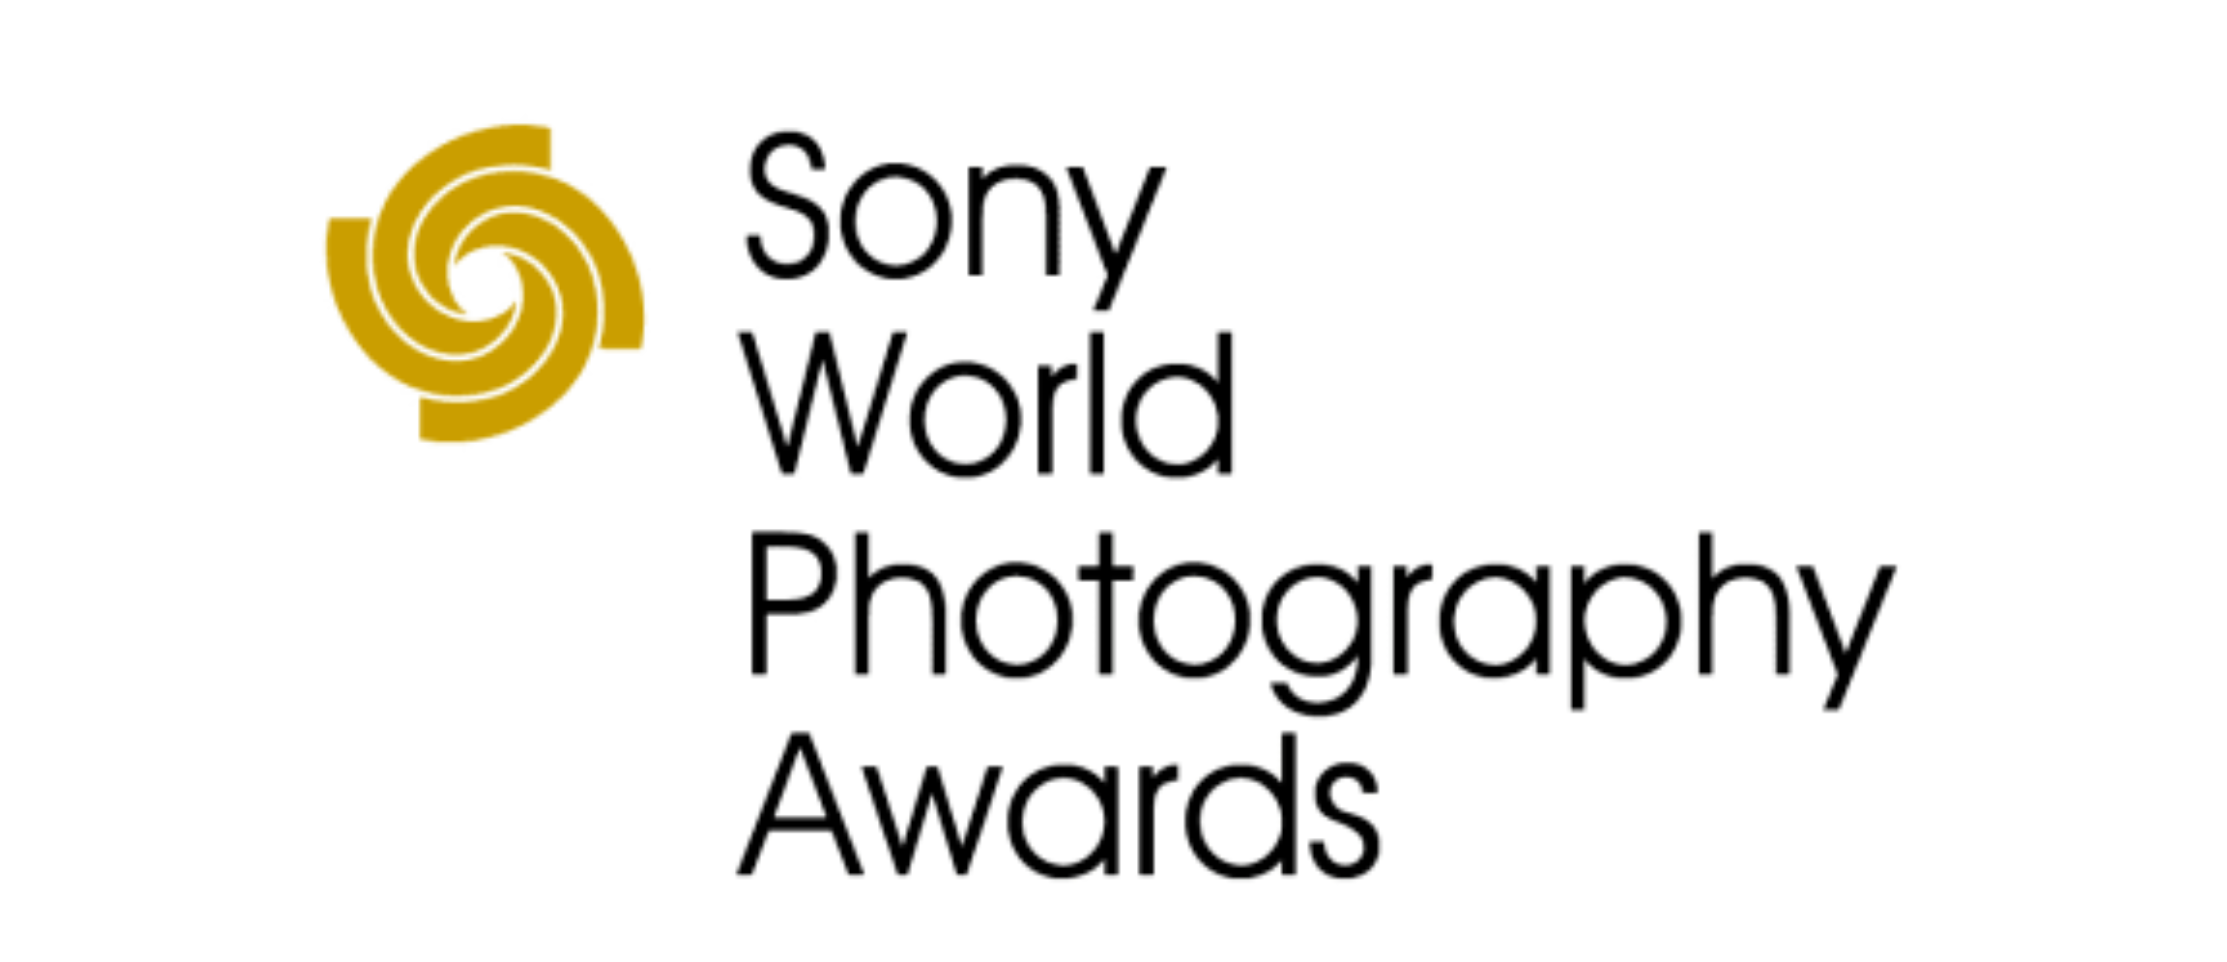 SONY WORLD PHOTOGRAPHY AWARDS